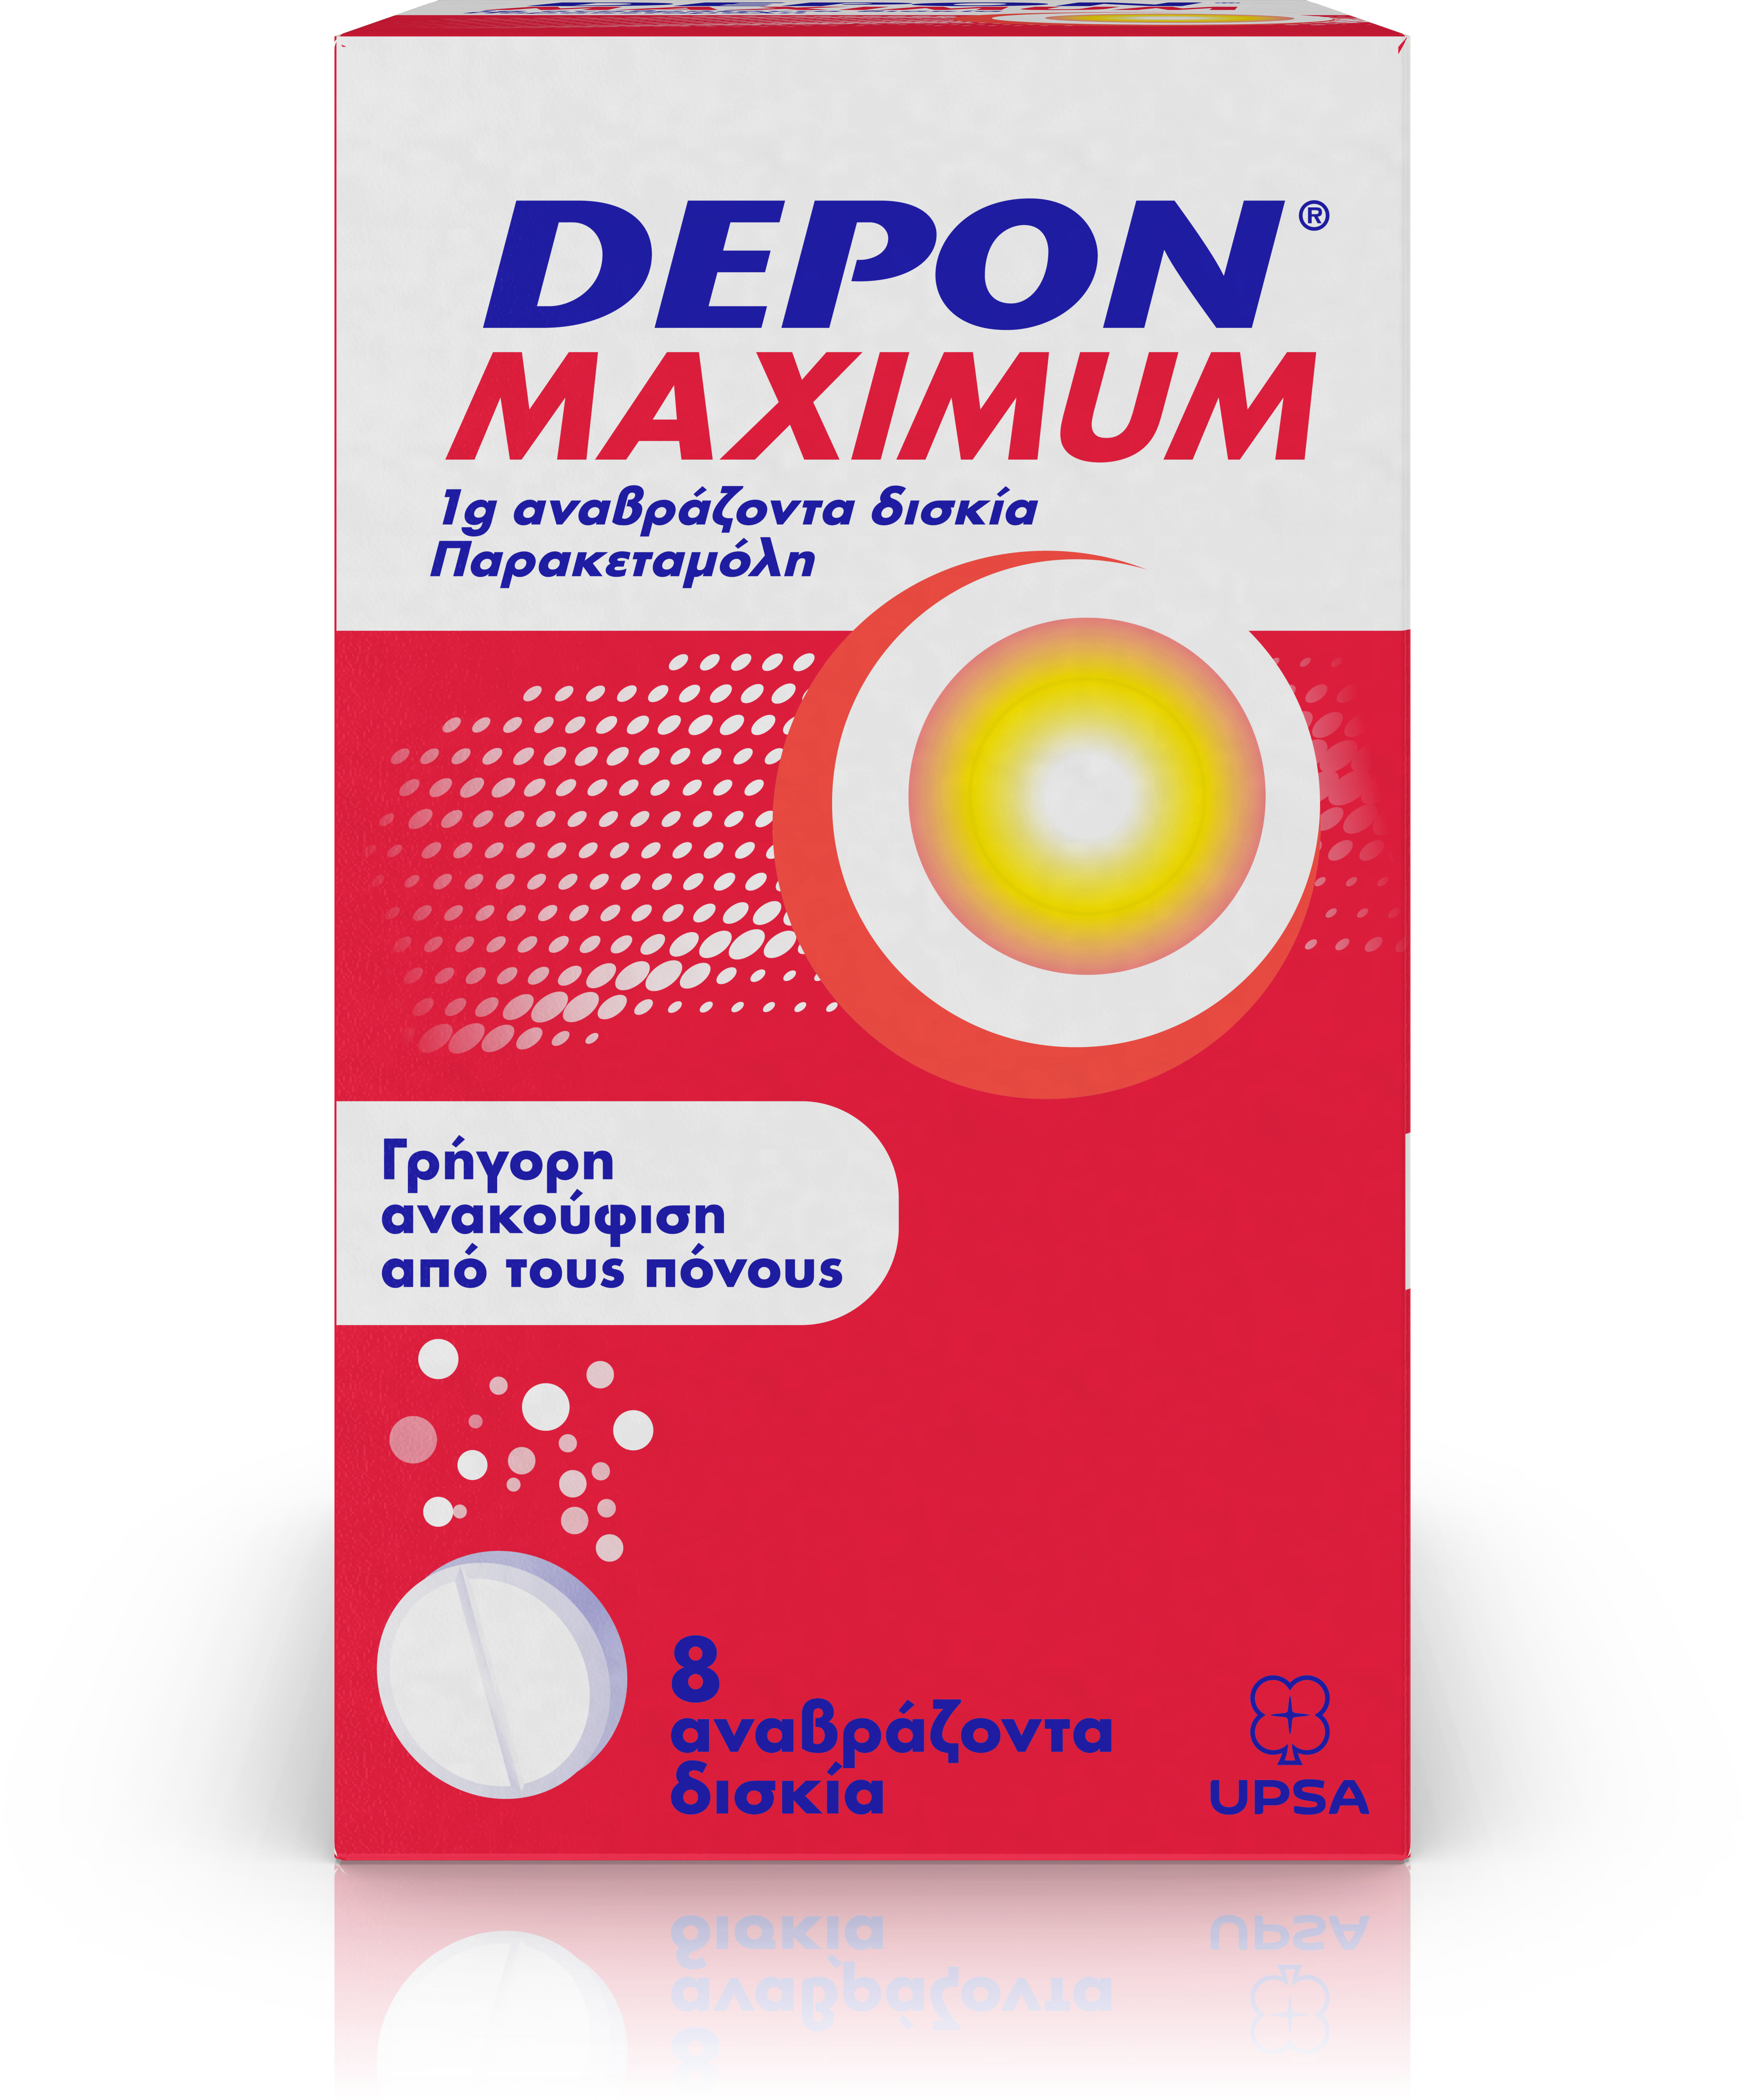 Depon Maximum